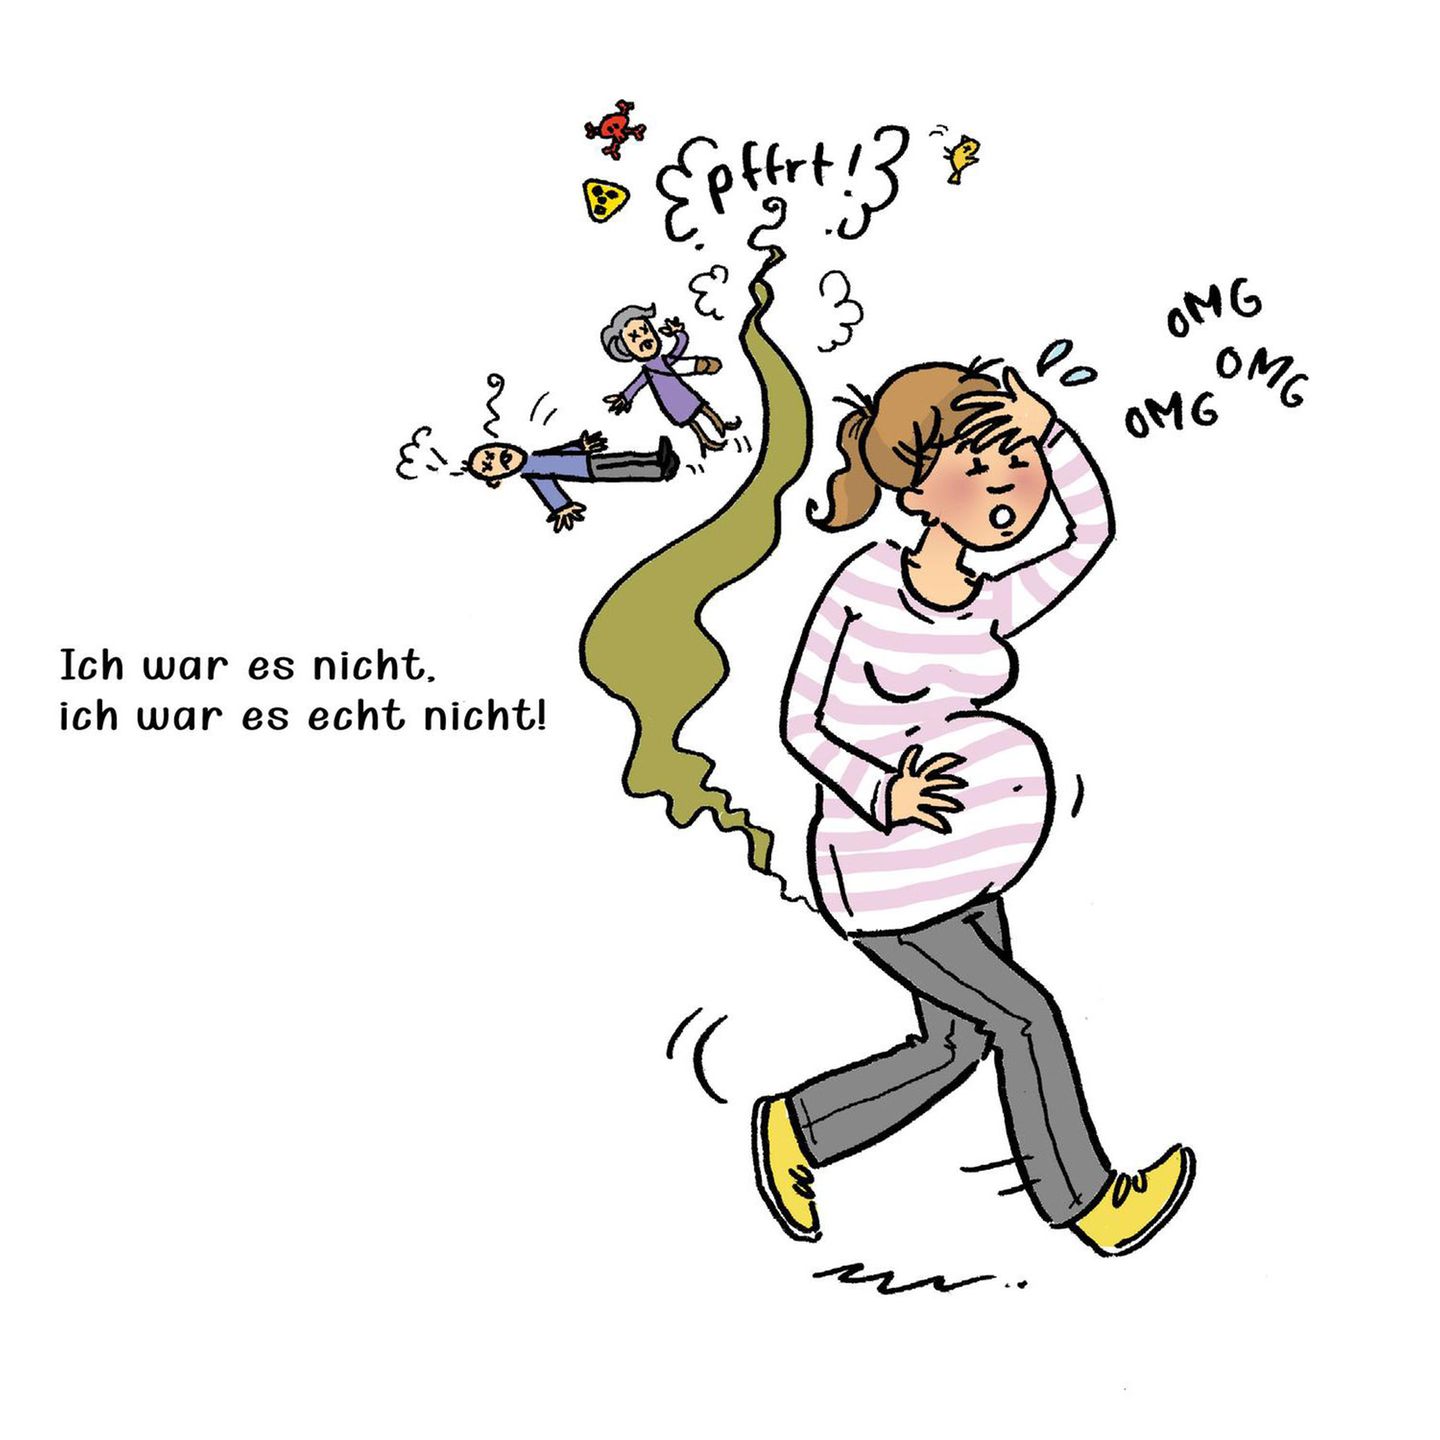 Witzige Comics Tatsachen über Schwangerschaft und Muttersein BRIGITTE.de